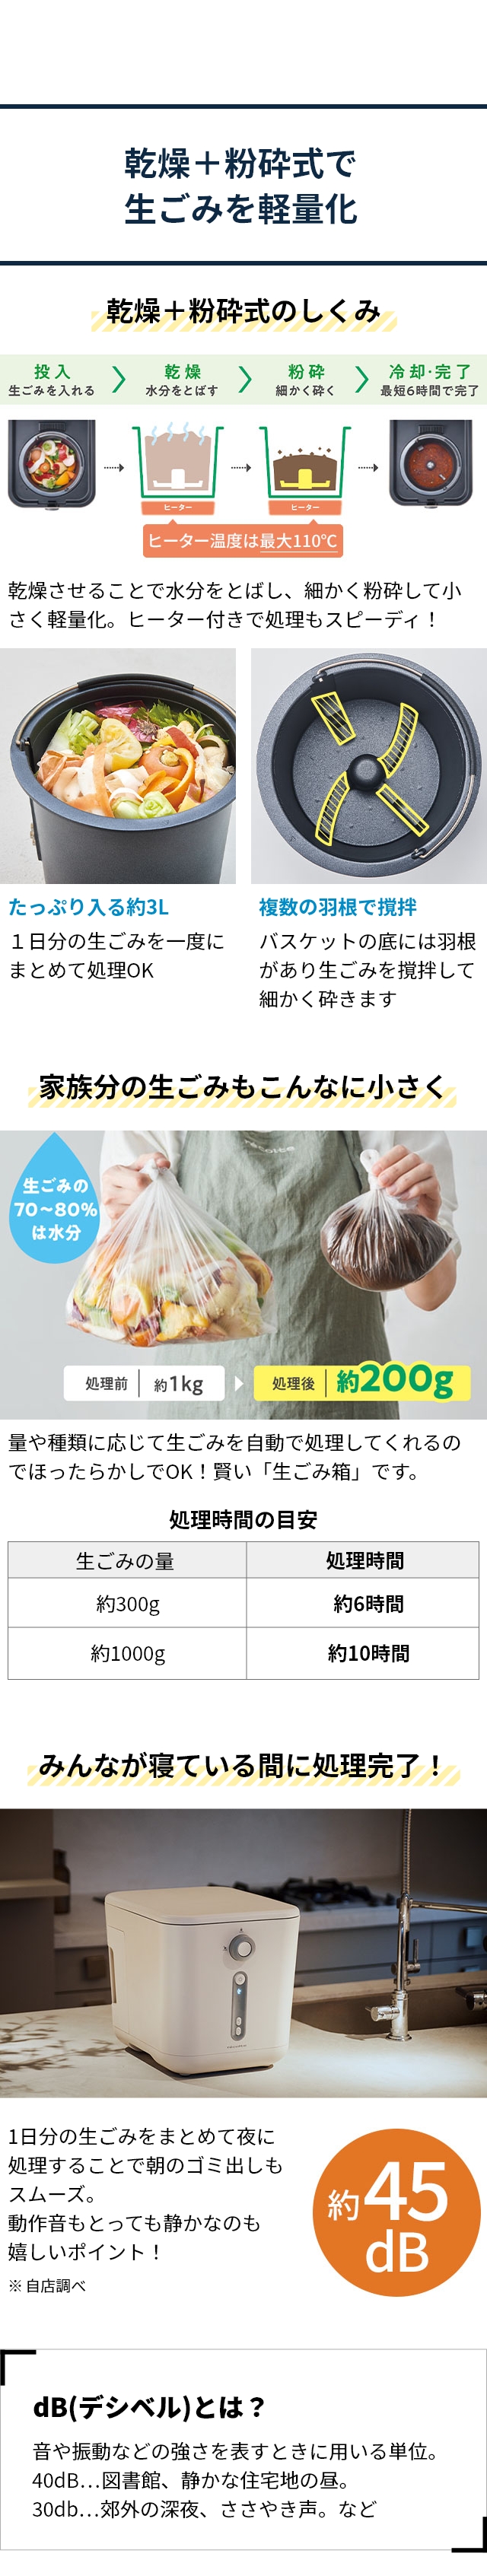 recolte (レコルト) 生ごみ処理機 (Food Waste Disposer) RDP-1